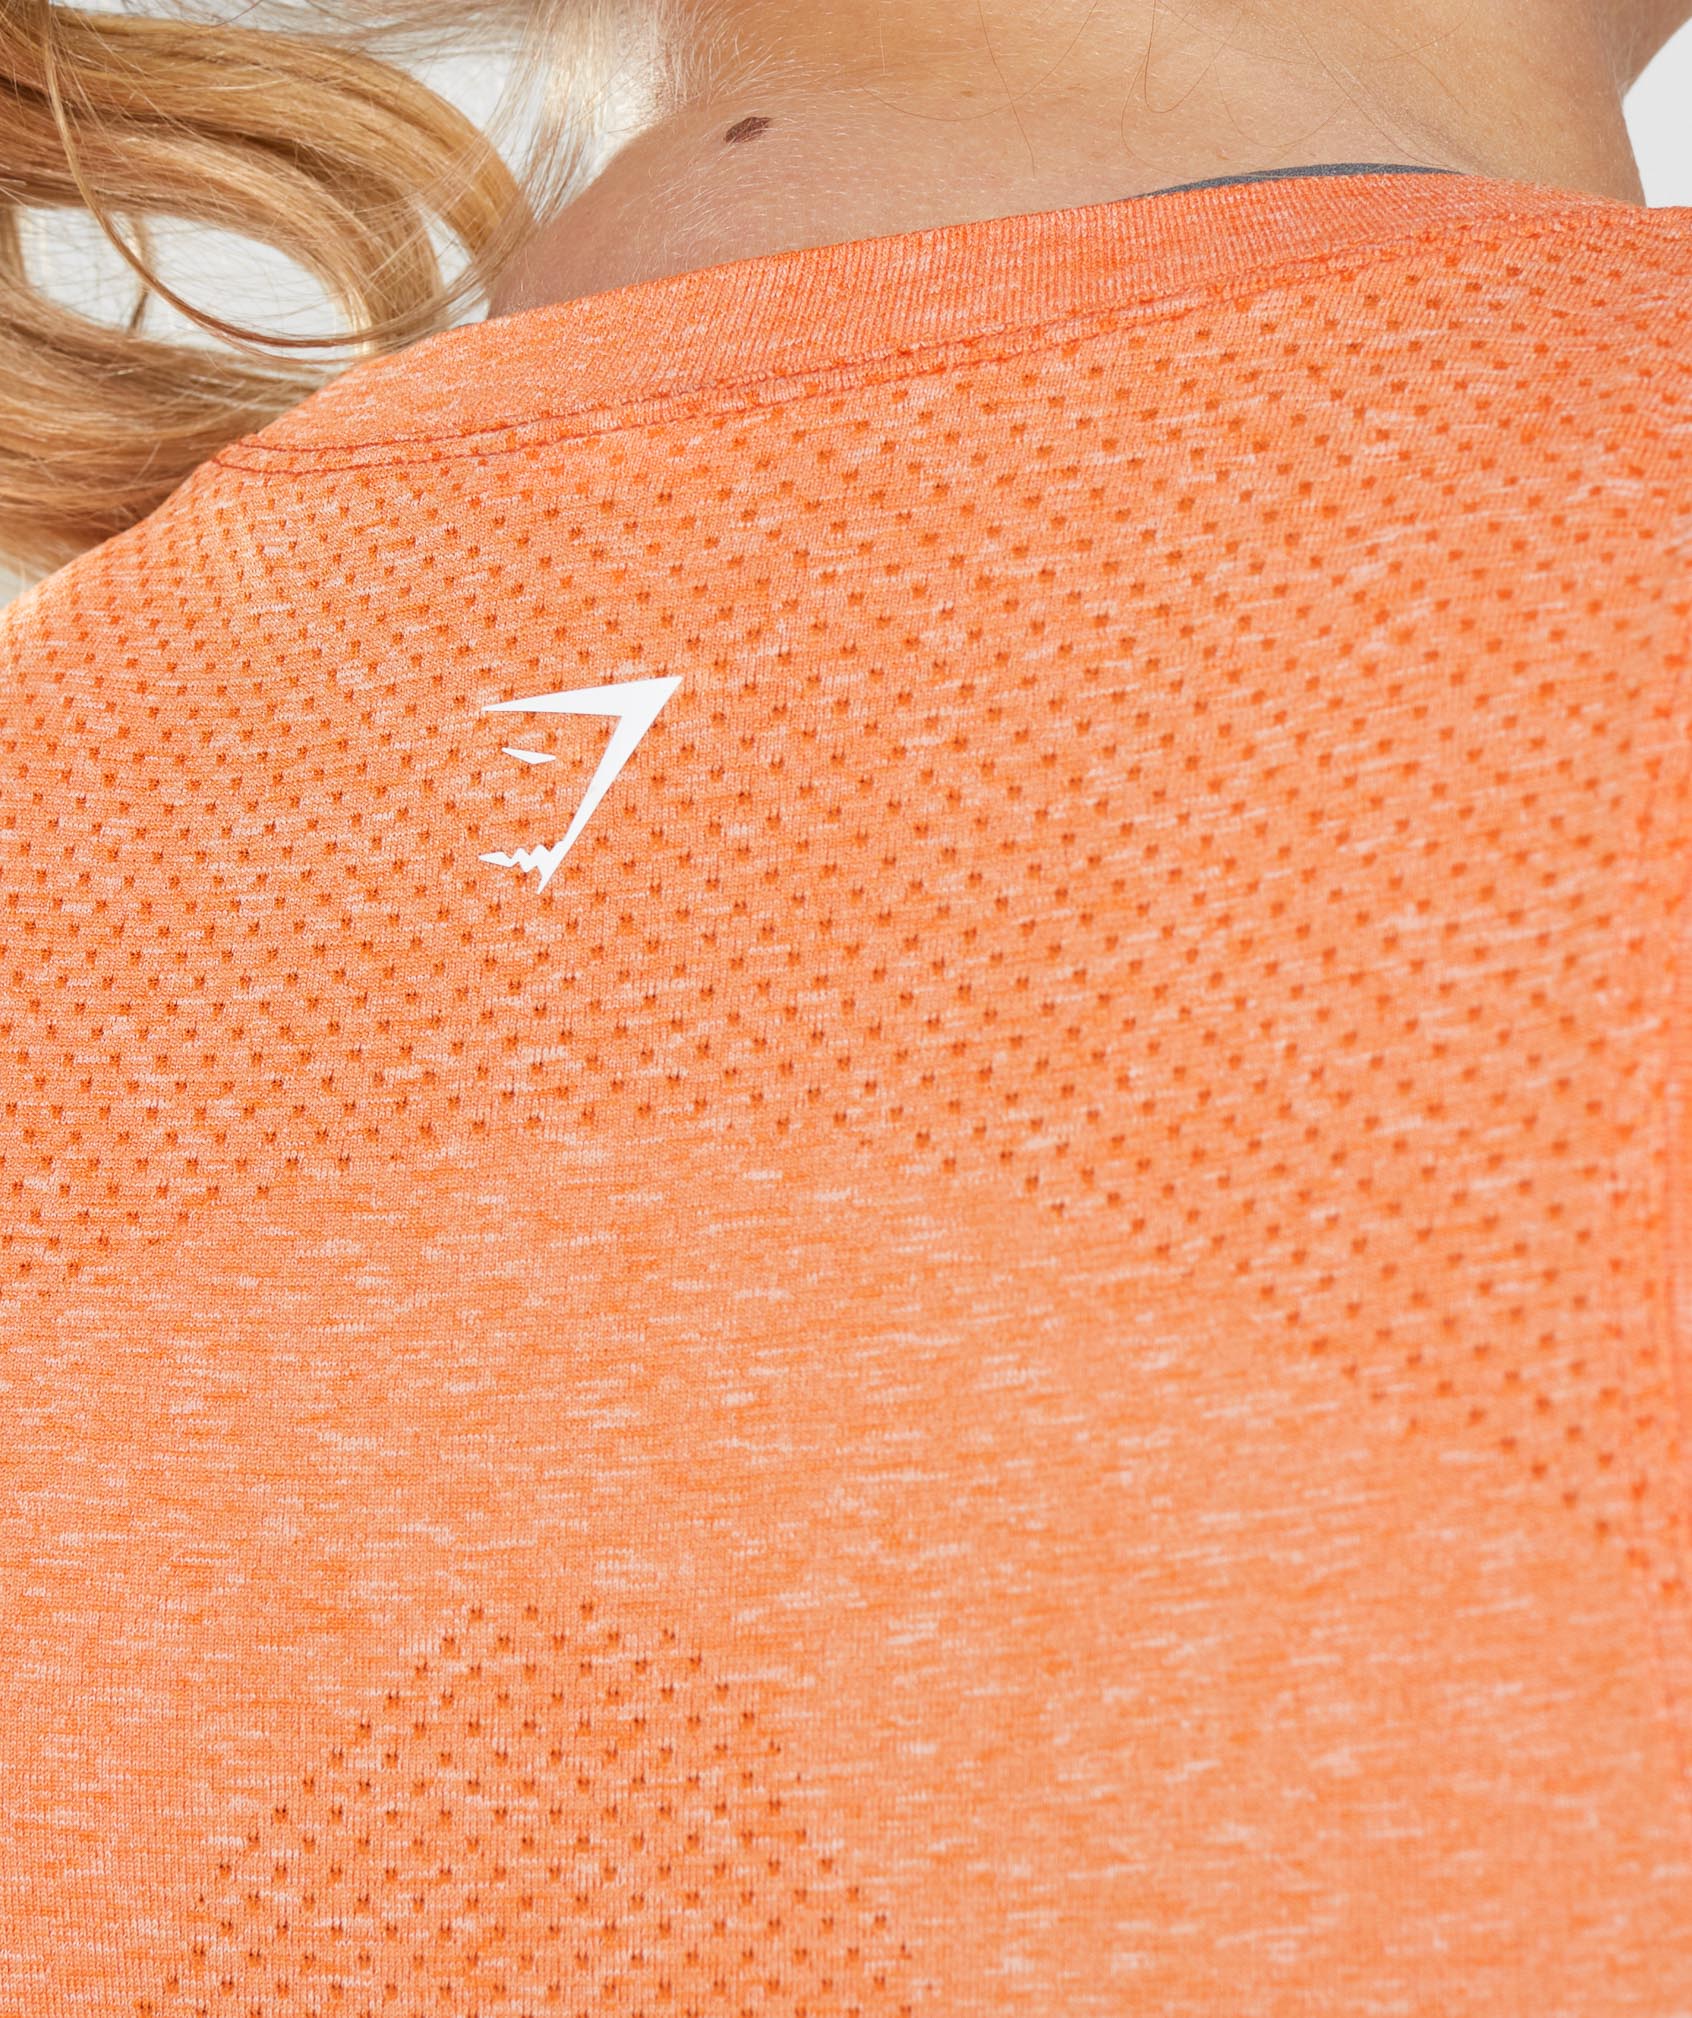 Gymshark Vital Seamless 2.0 Apricot Orange Marl Women's Leggings